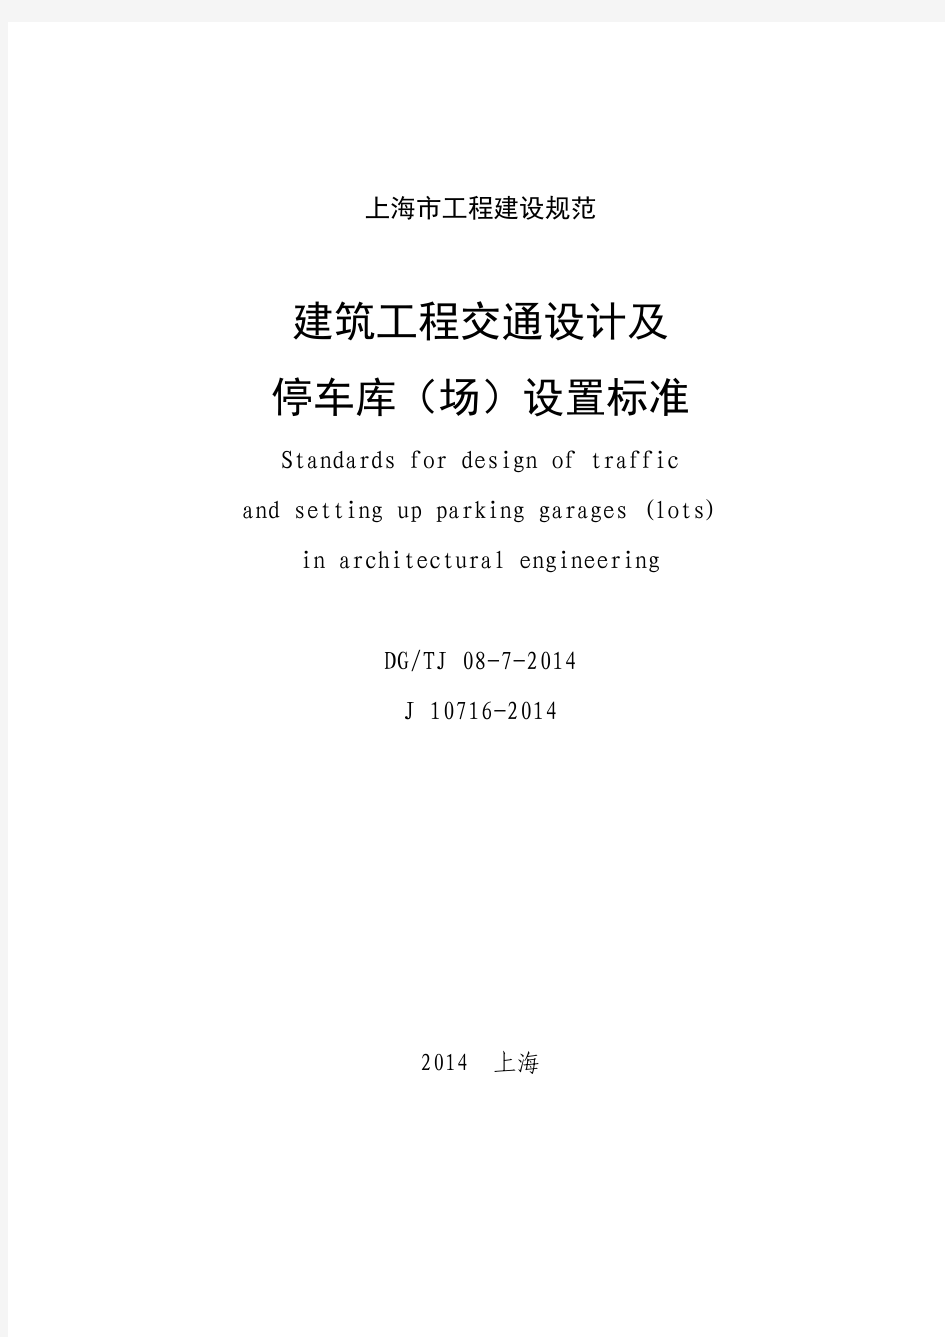 《建筑工程交通设计及停车库(场)设置标准》(DG+TJ+08-7-2014)(1)